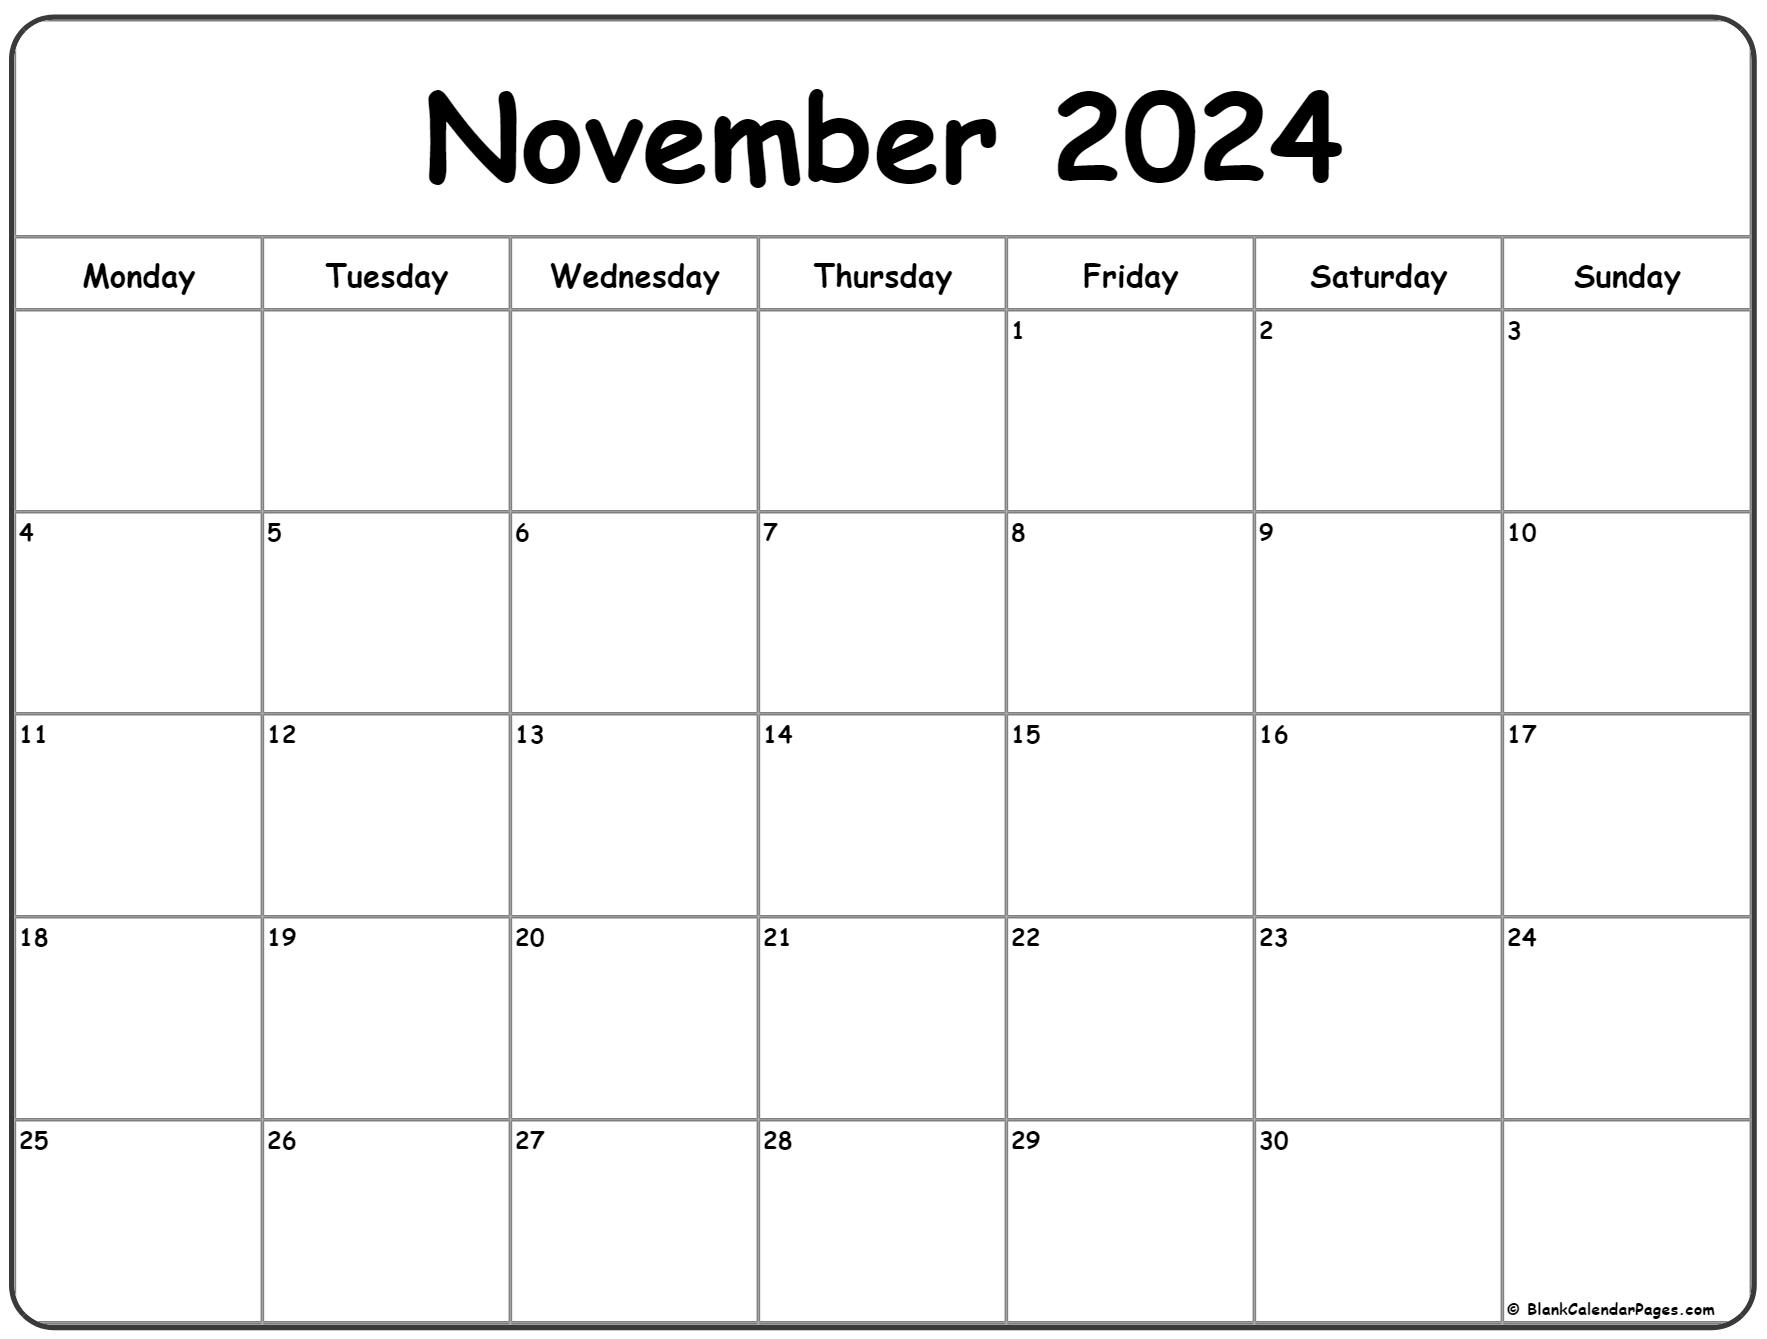 November 2024 Monday Calendar | Monday To Sunday for November 2024 Printable Calendar